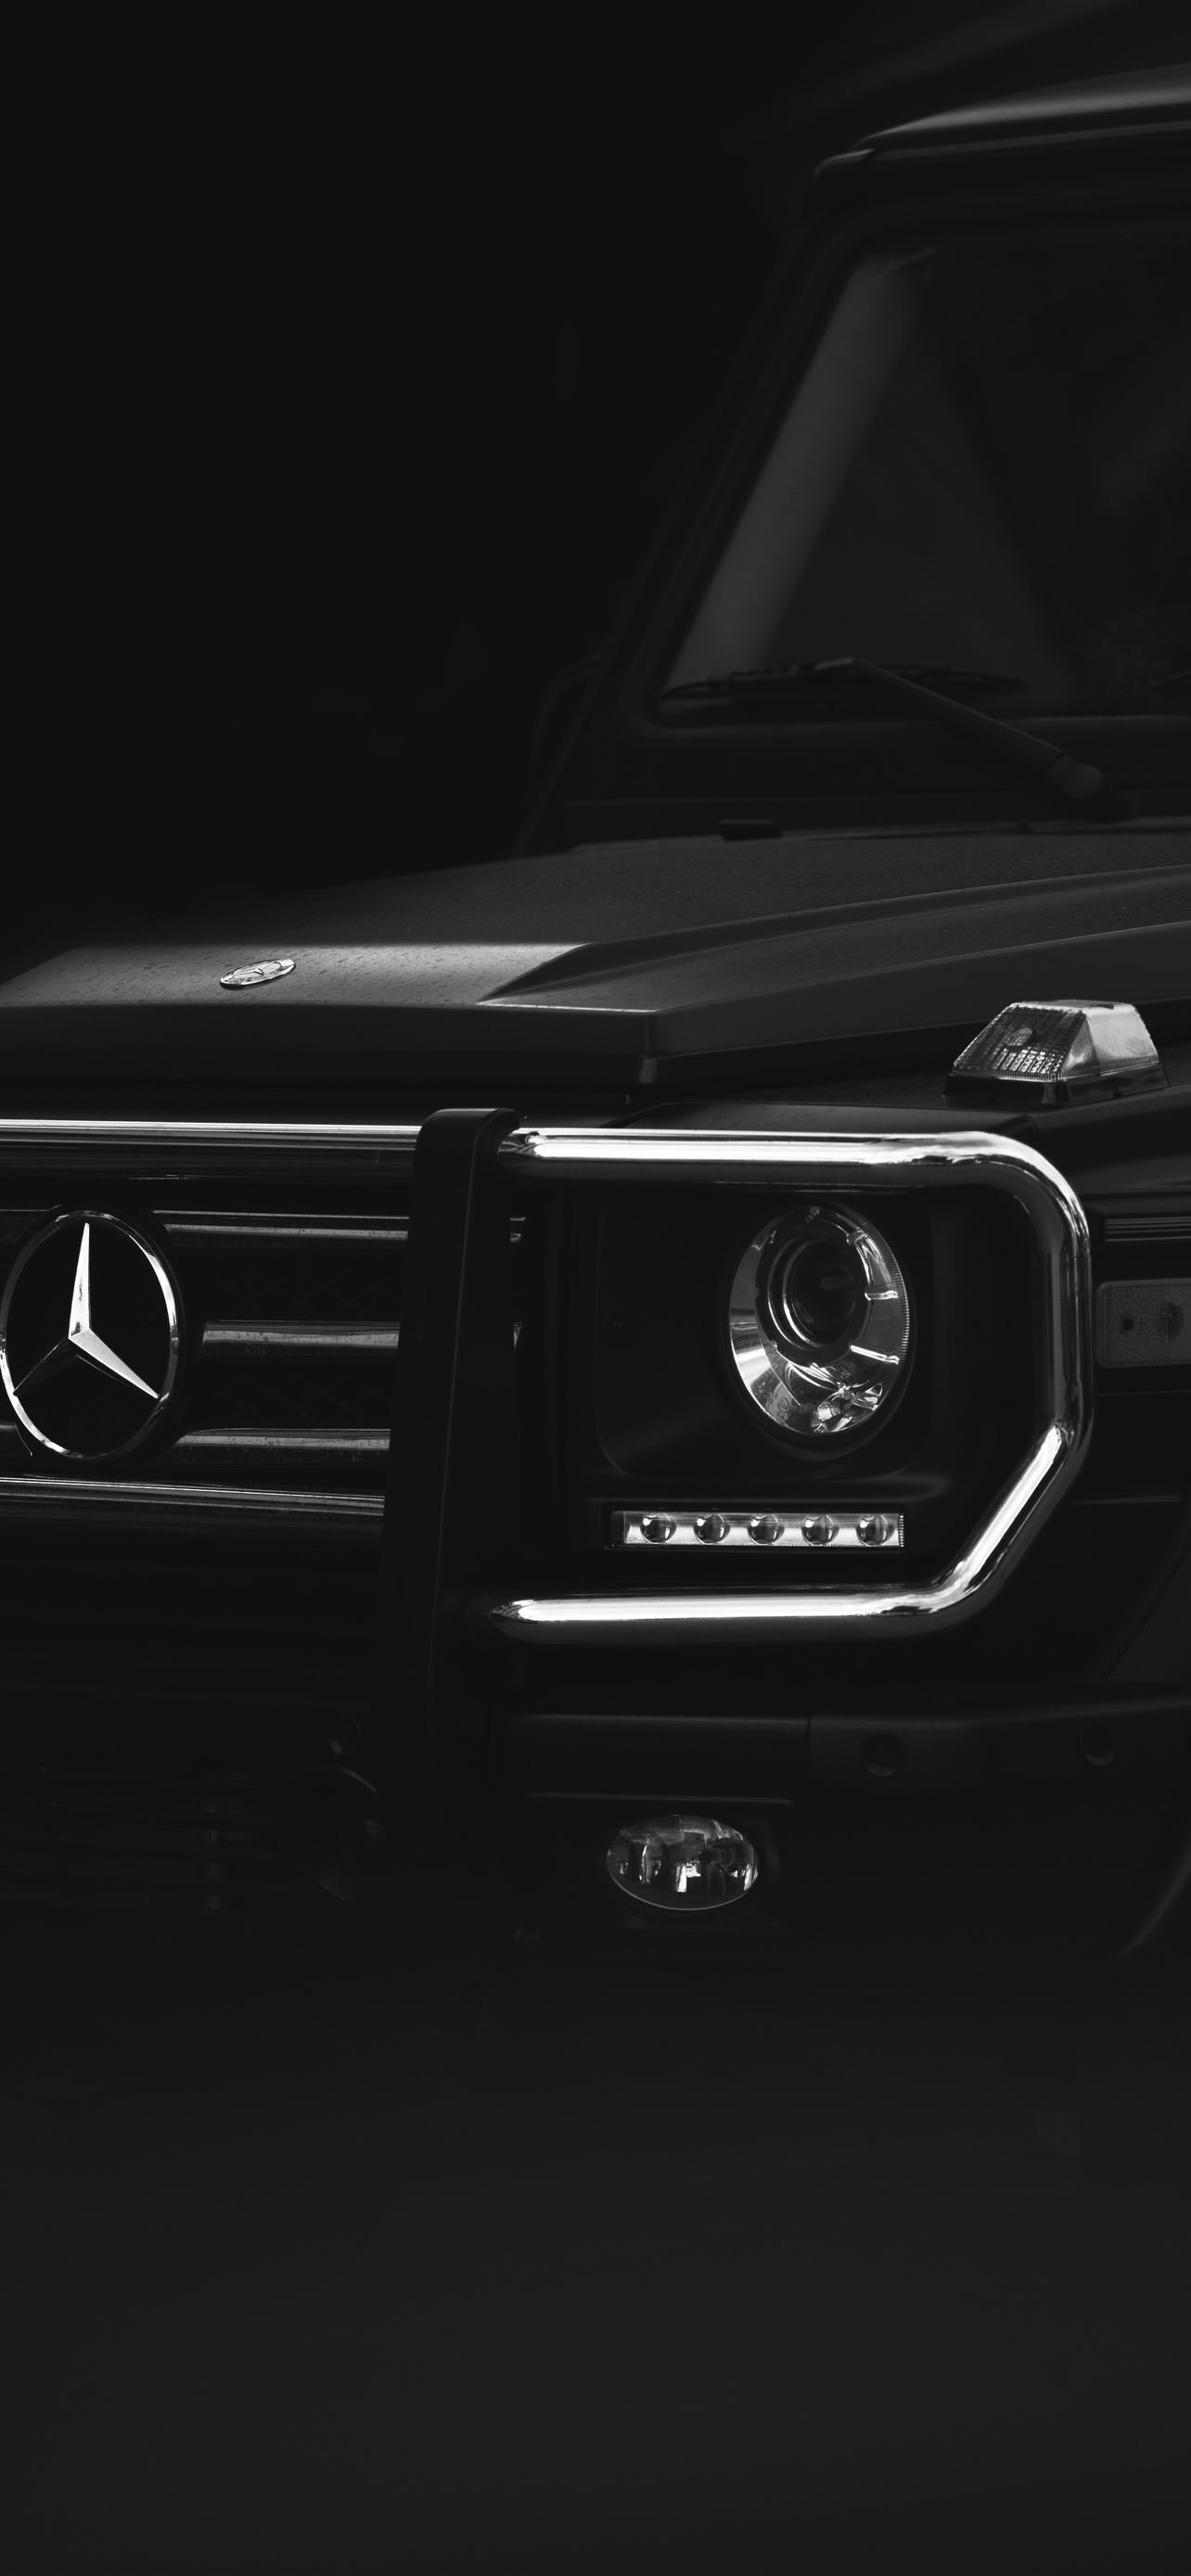 Black Mercedes Benz Car iPhone Wallpaper